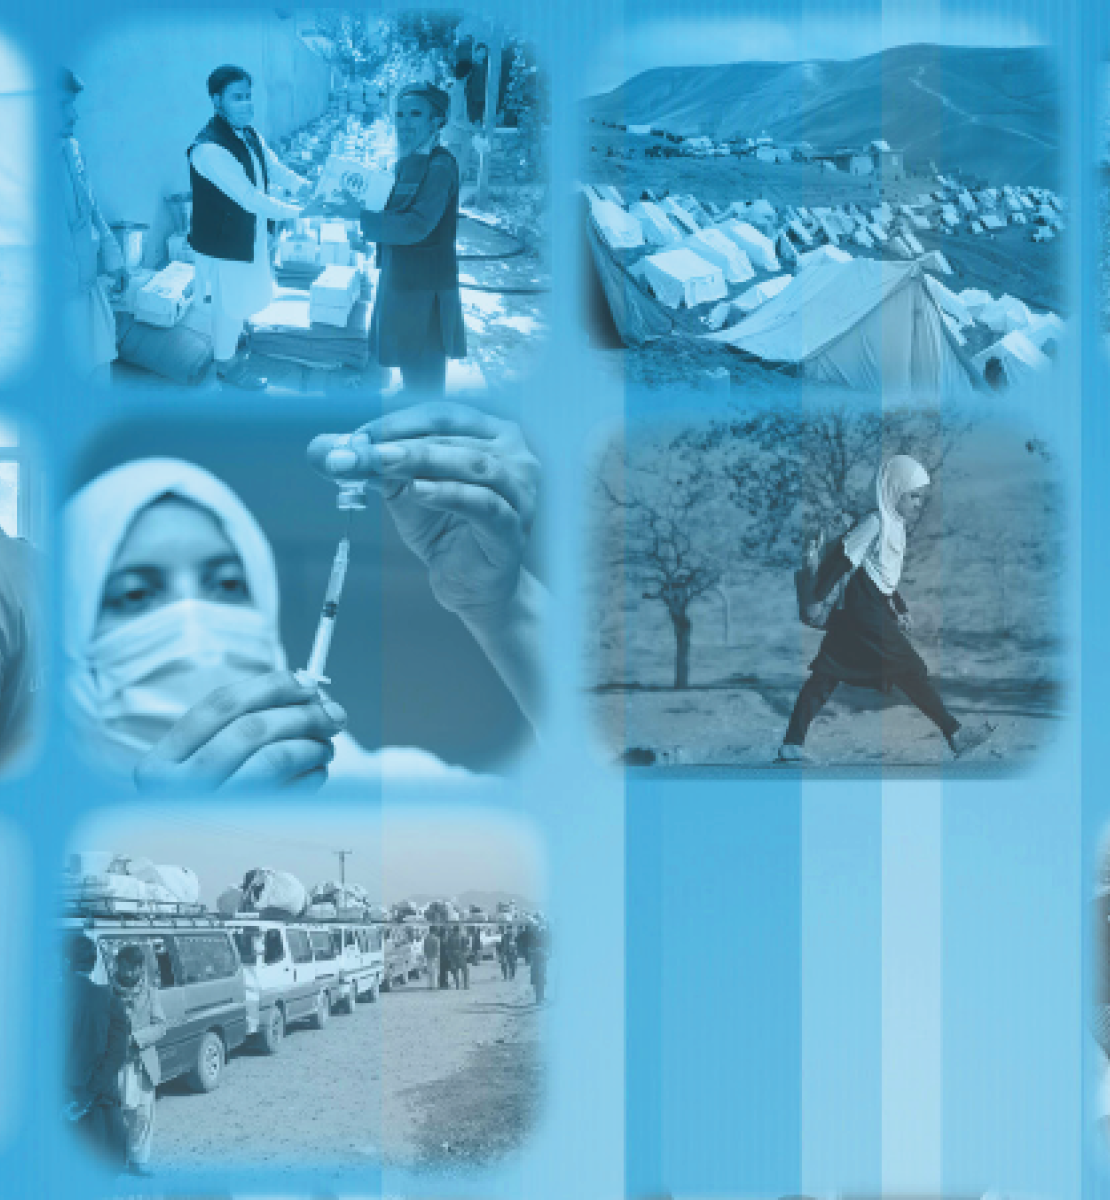 Montage de plusieurs images en noir et blanc montrant des habitants d'Afghanistan sur fond bleu.